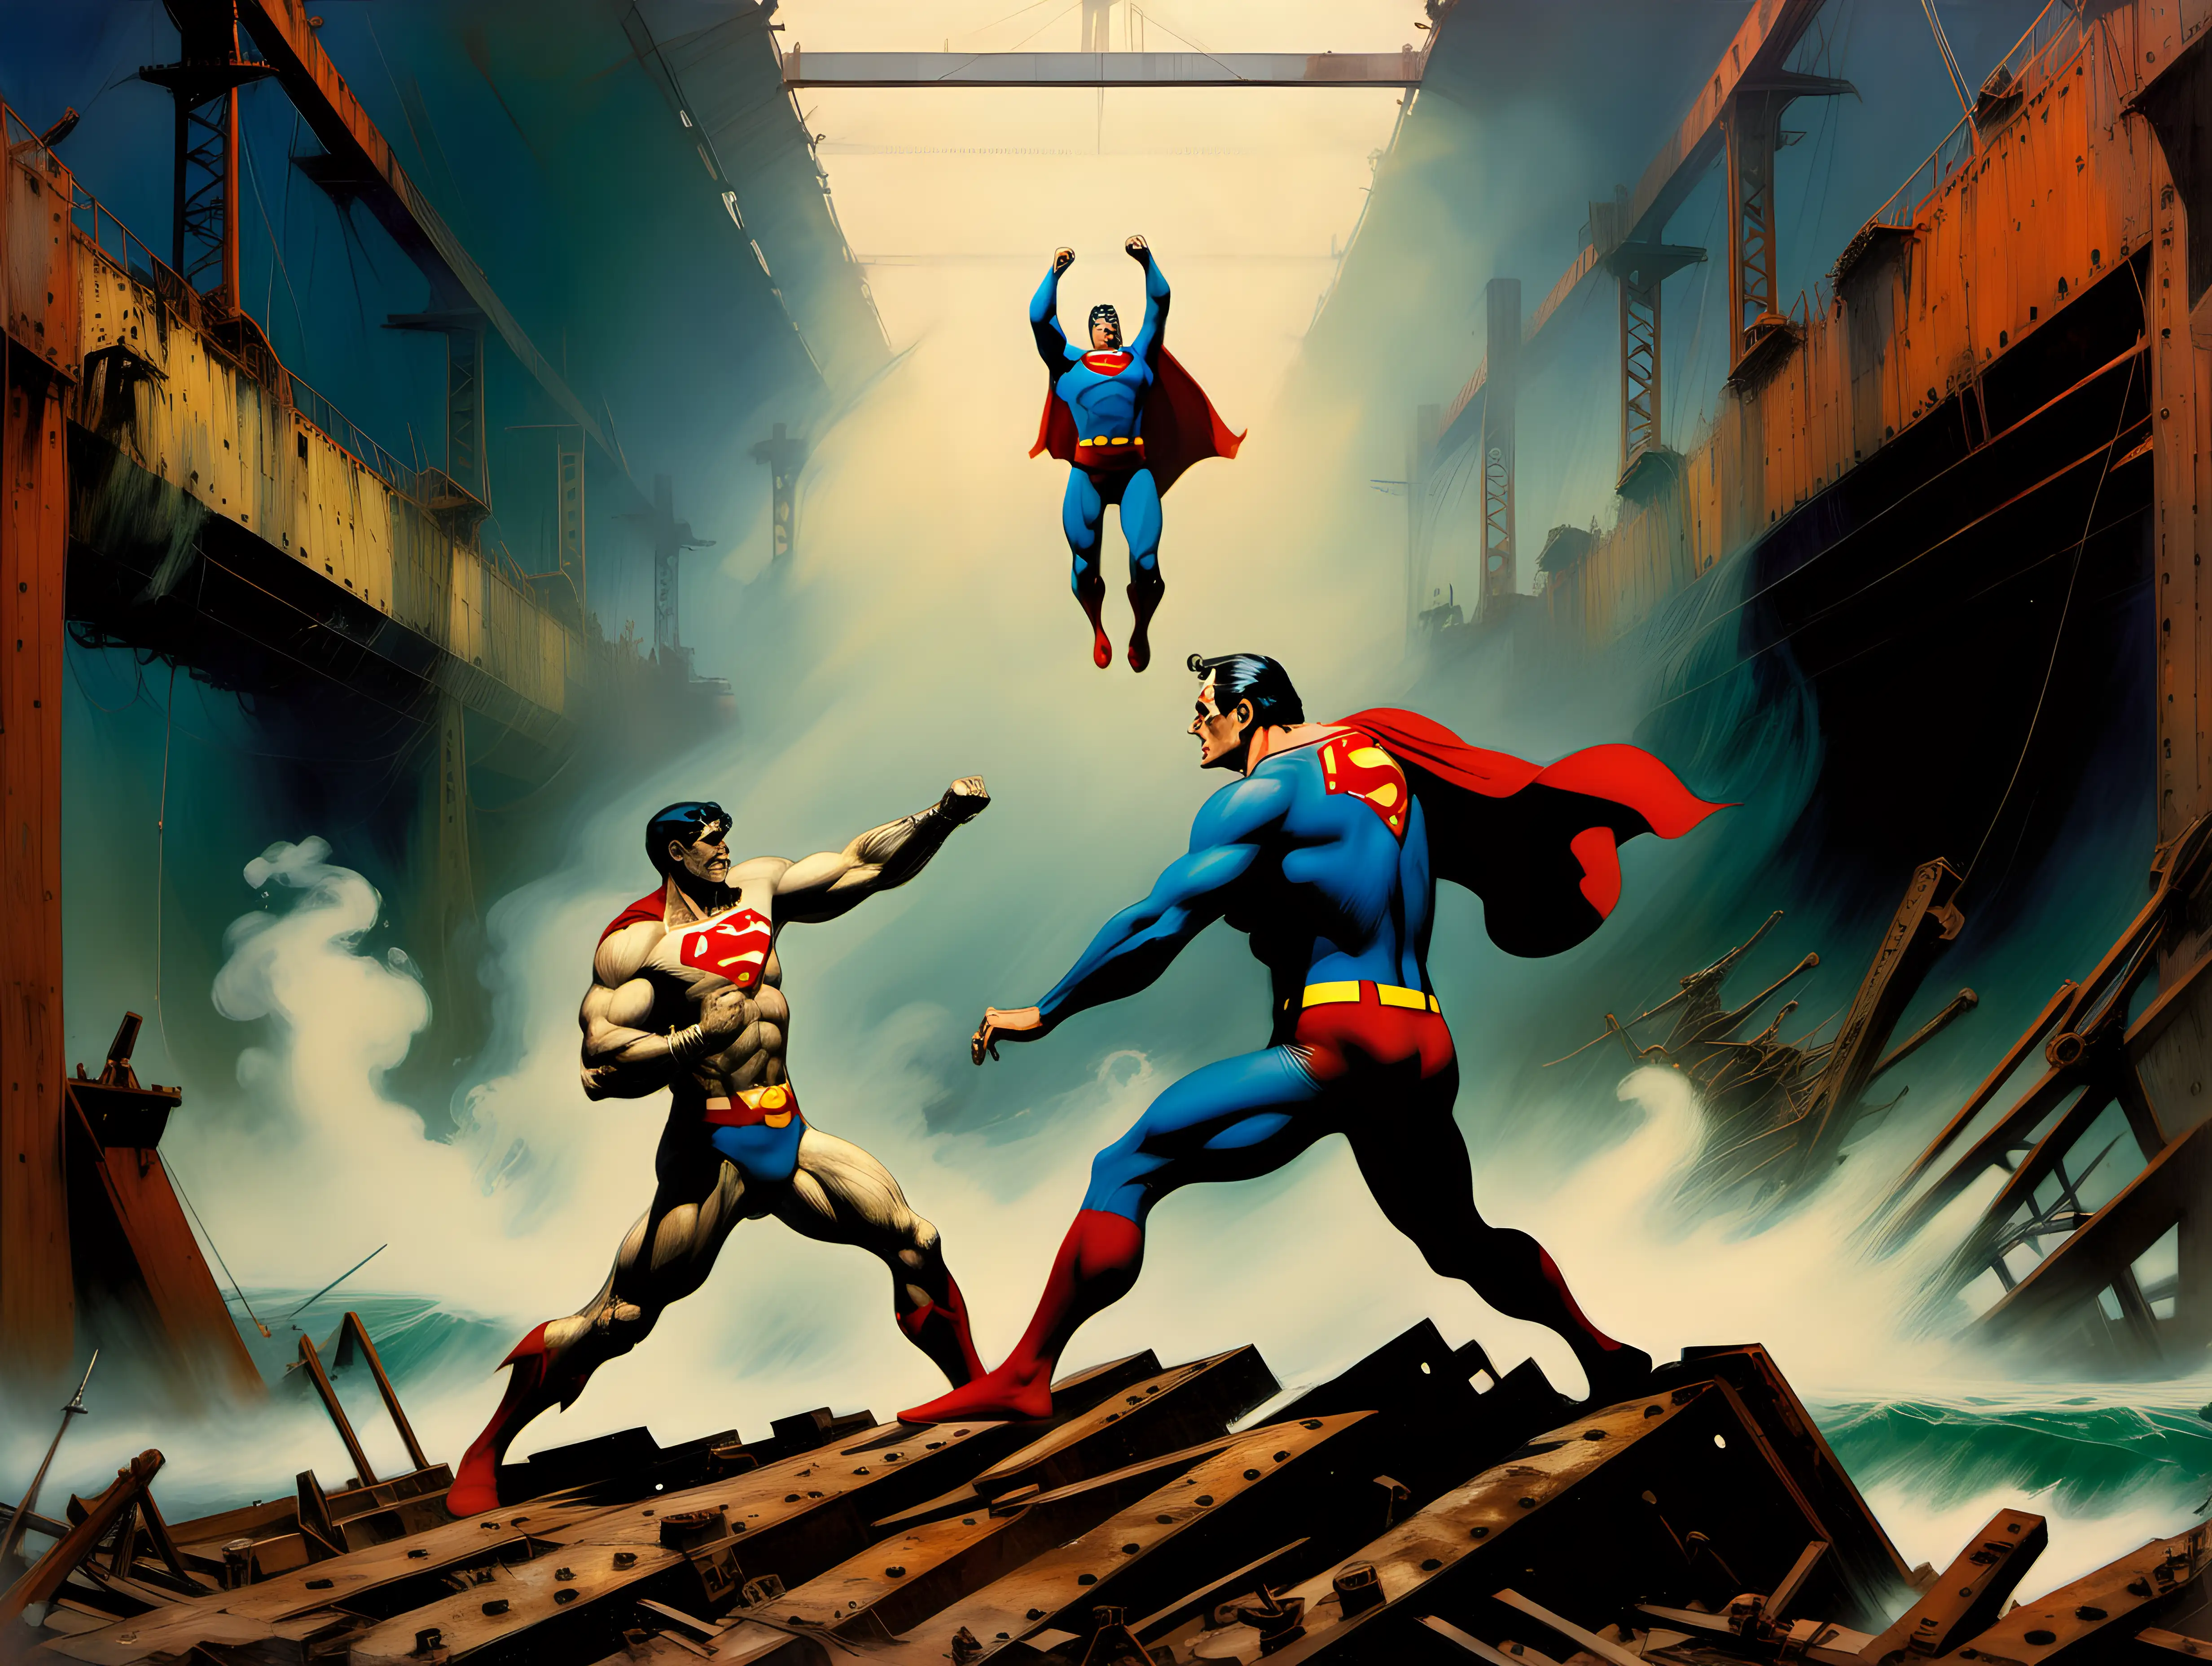 Frank Frazetta style Superman fights bizzaro Superman in an abandon shipyard